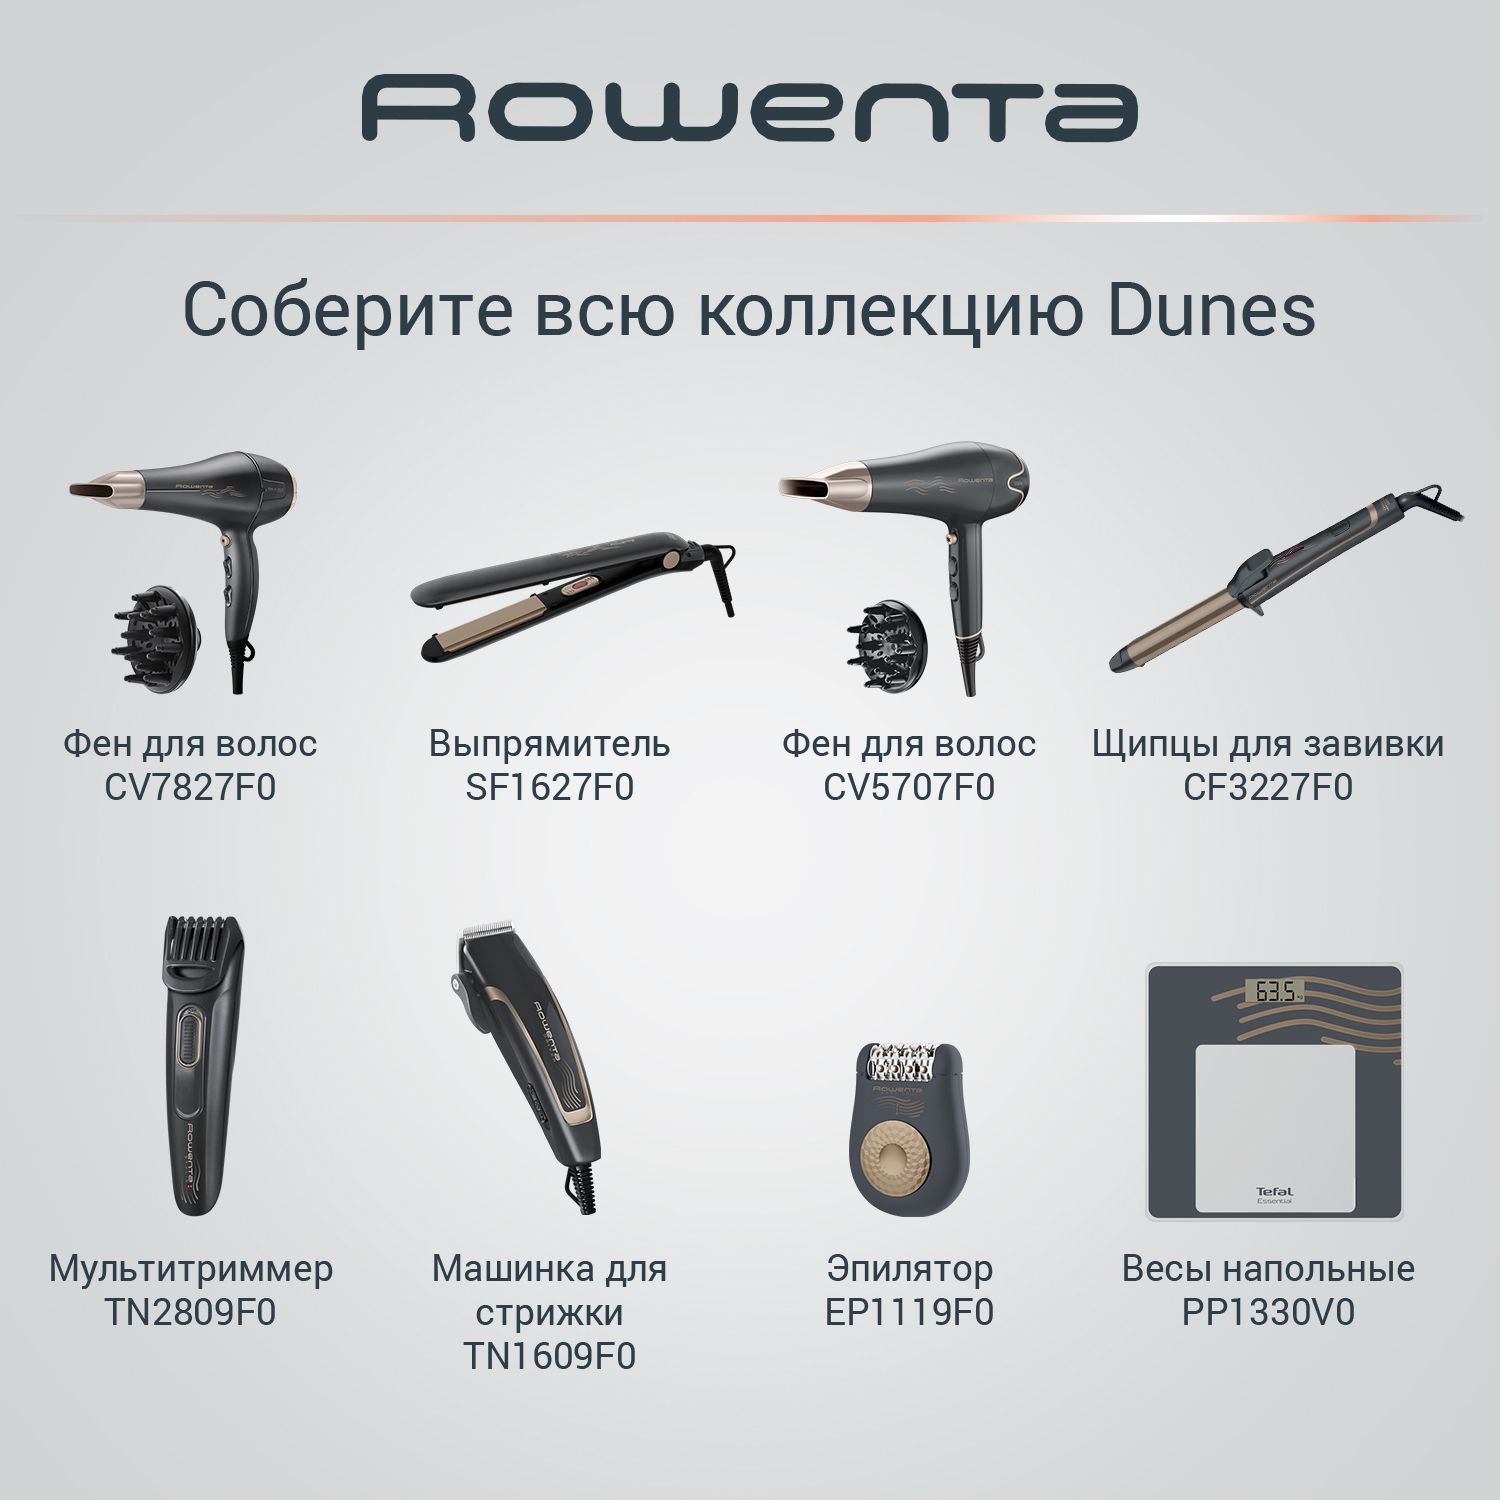 Как пользоваться выпрямителем для волос rowenta